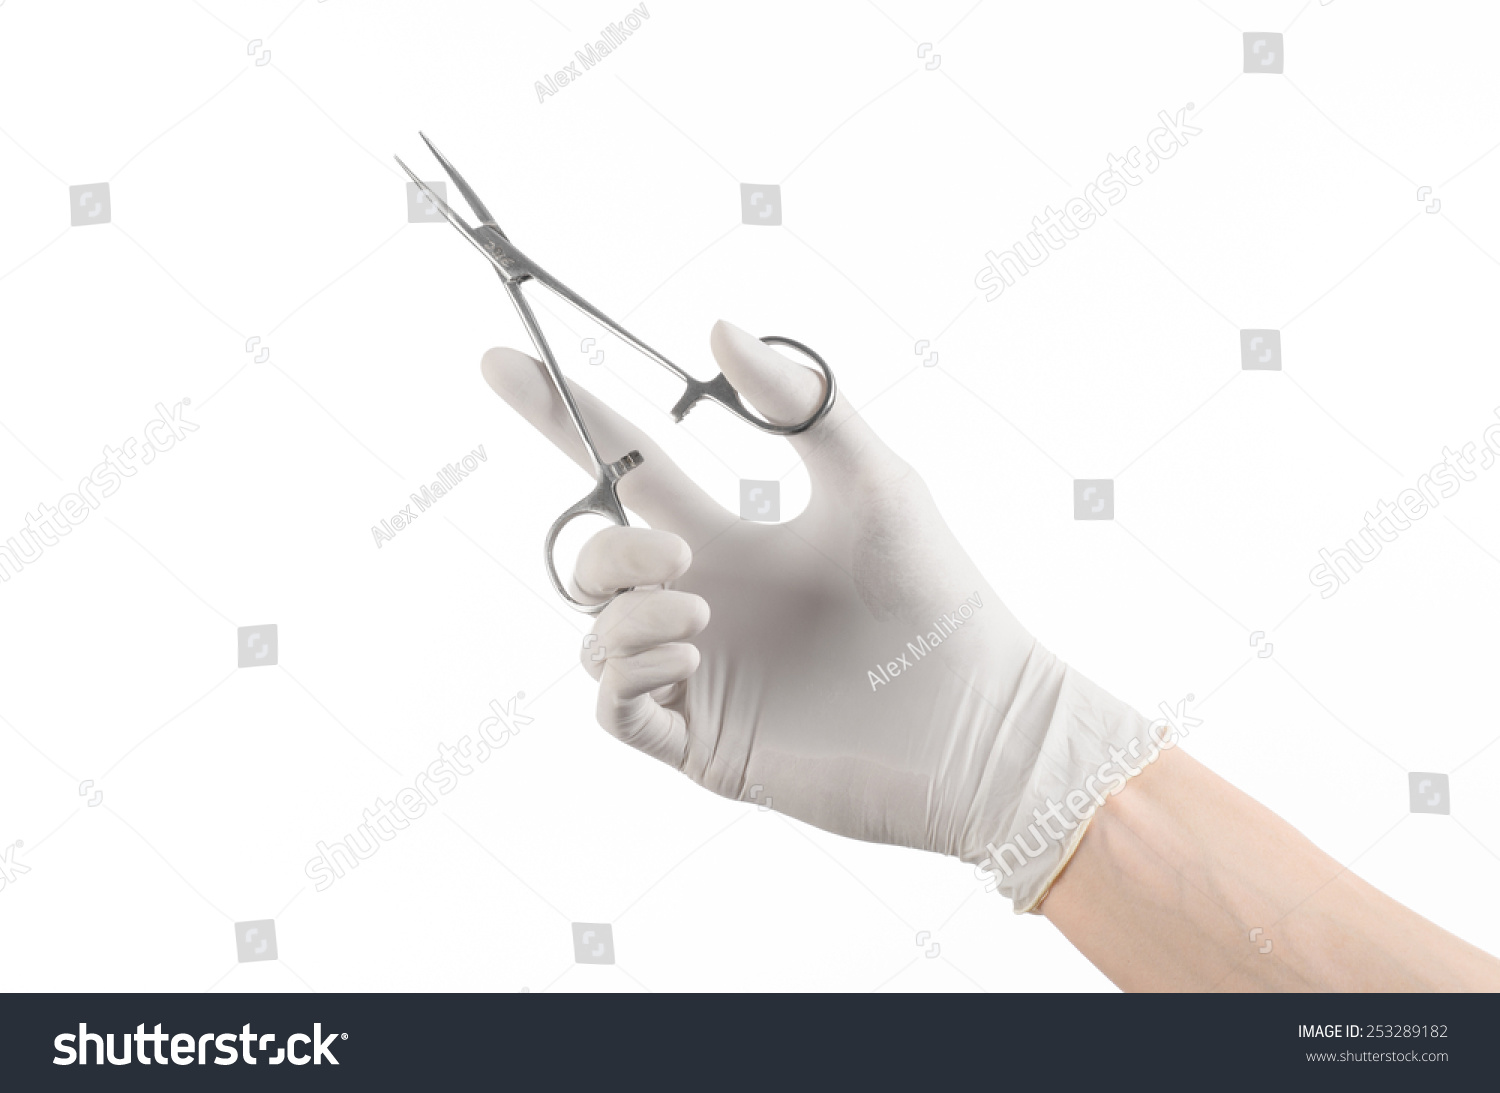 27,961 Doctor scissors Images, Stock Photos & Vectors | Shutterstock